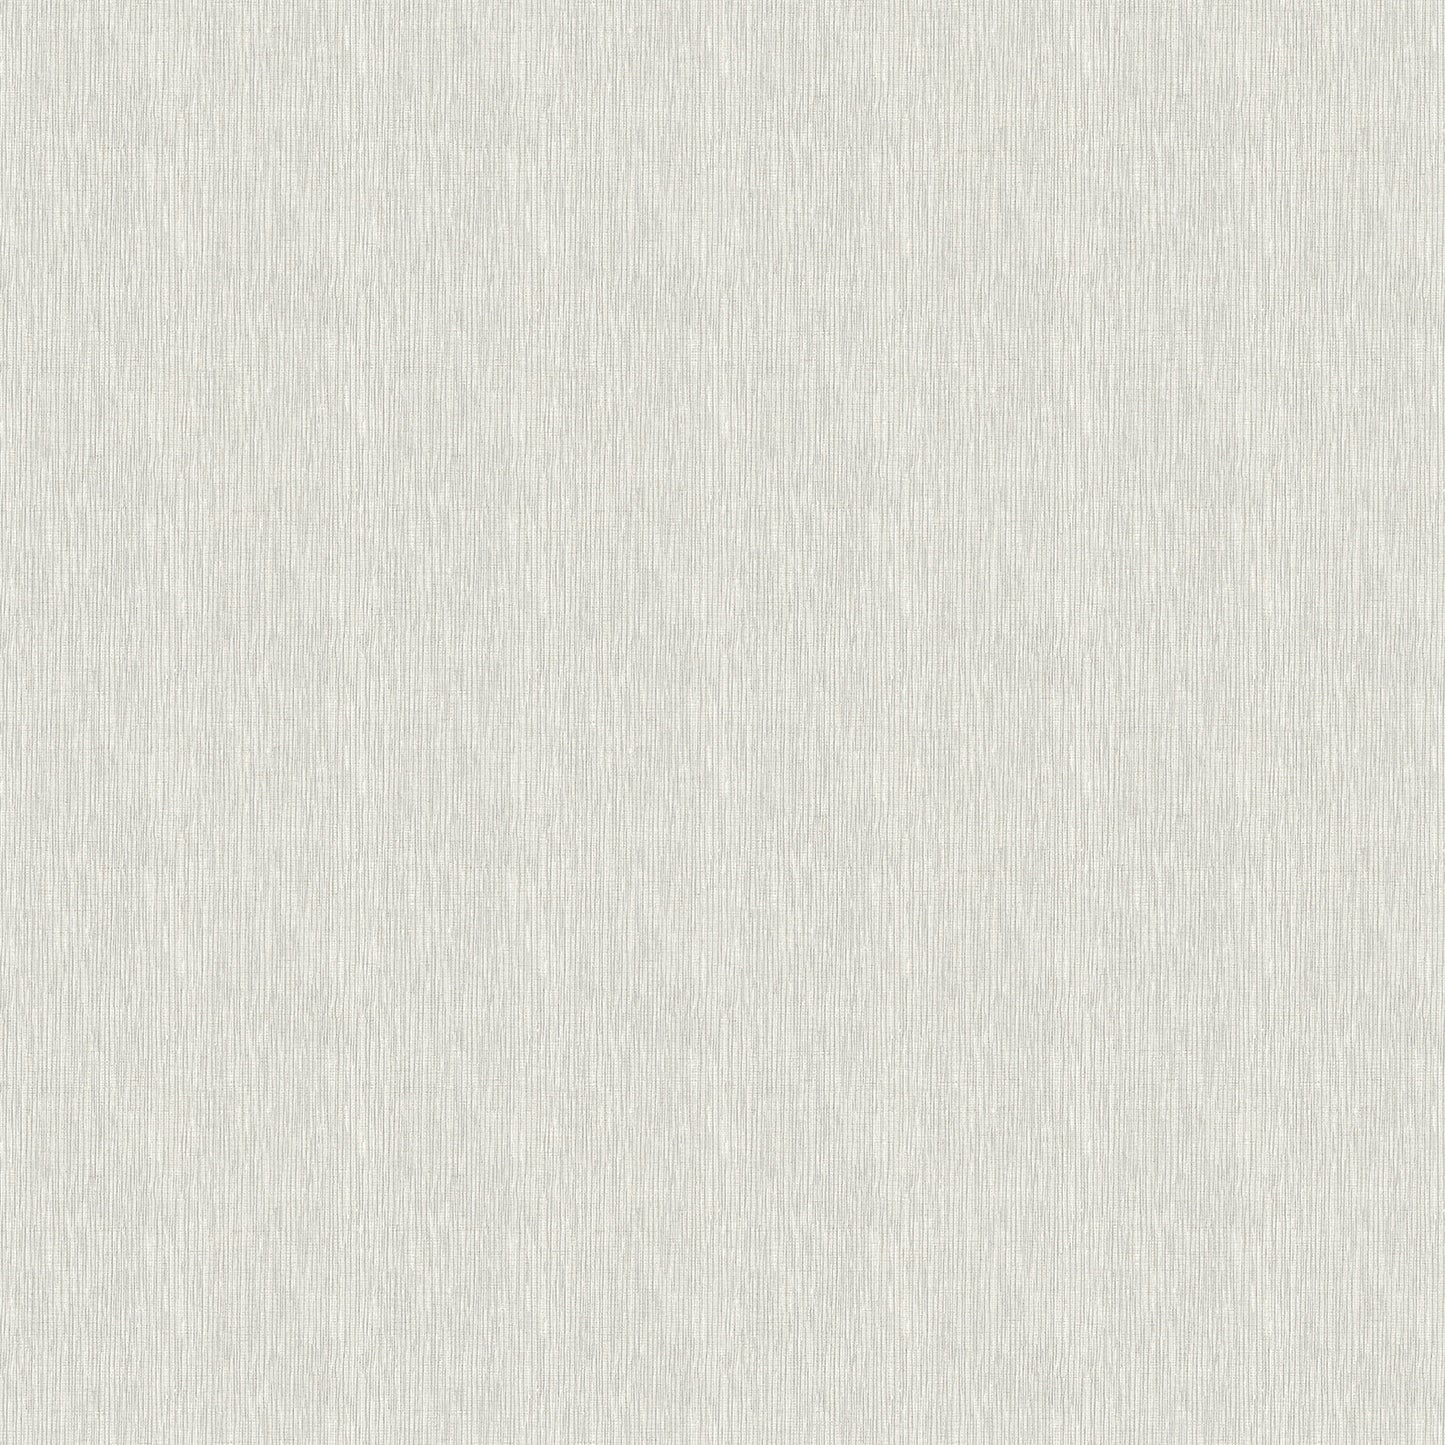 Purchase 2979-36976-5 Bali Seaton Grey Faux Grasscloth Grey by Advantage Wallpaper